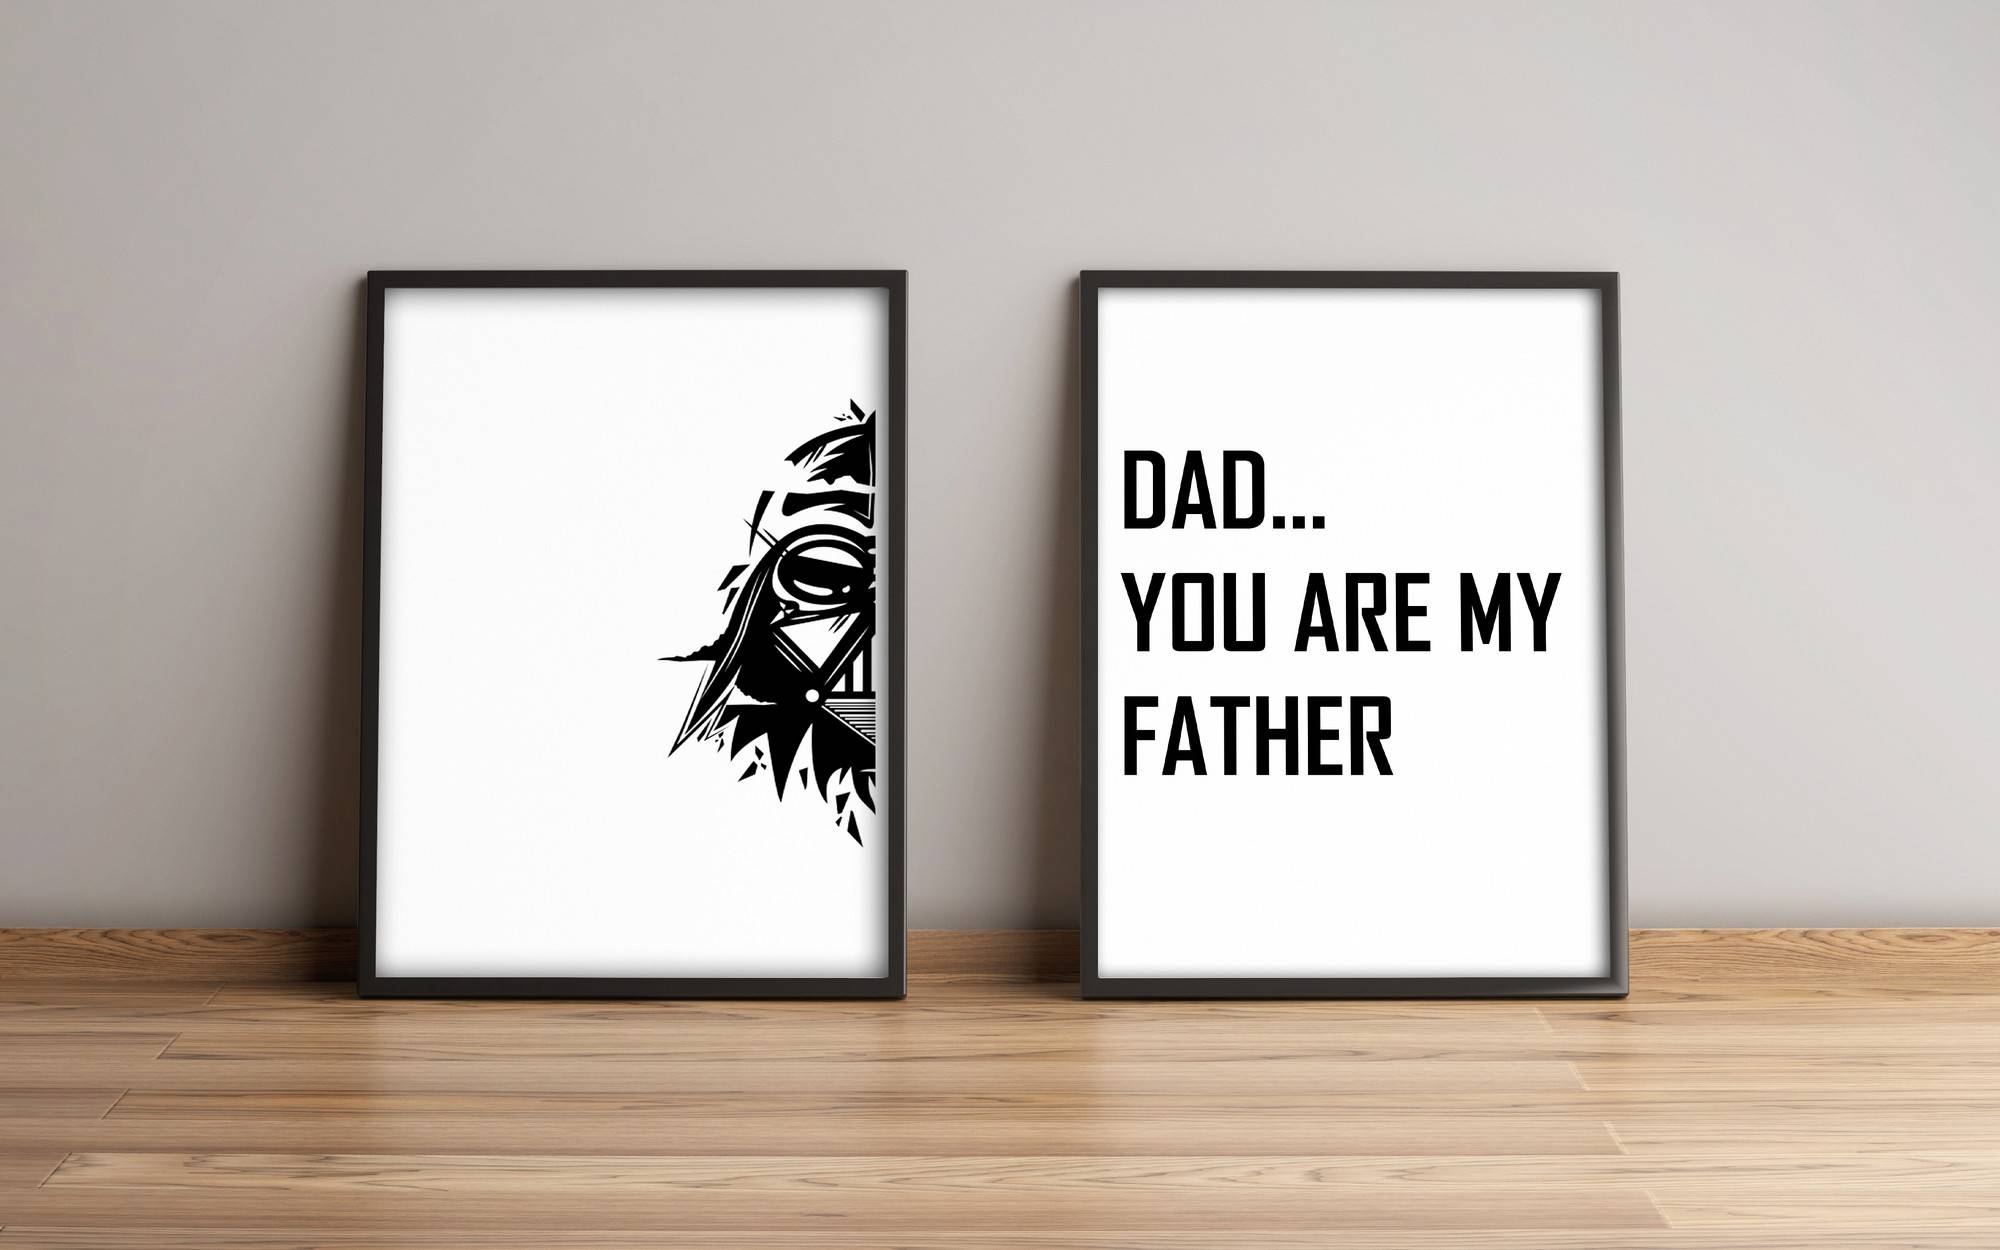 Juego de 2 piezas a juego Star Wars Darth Vader / I am your father MDF Black